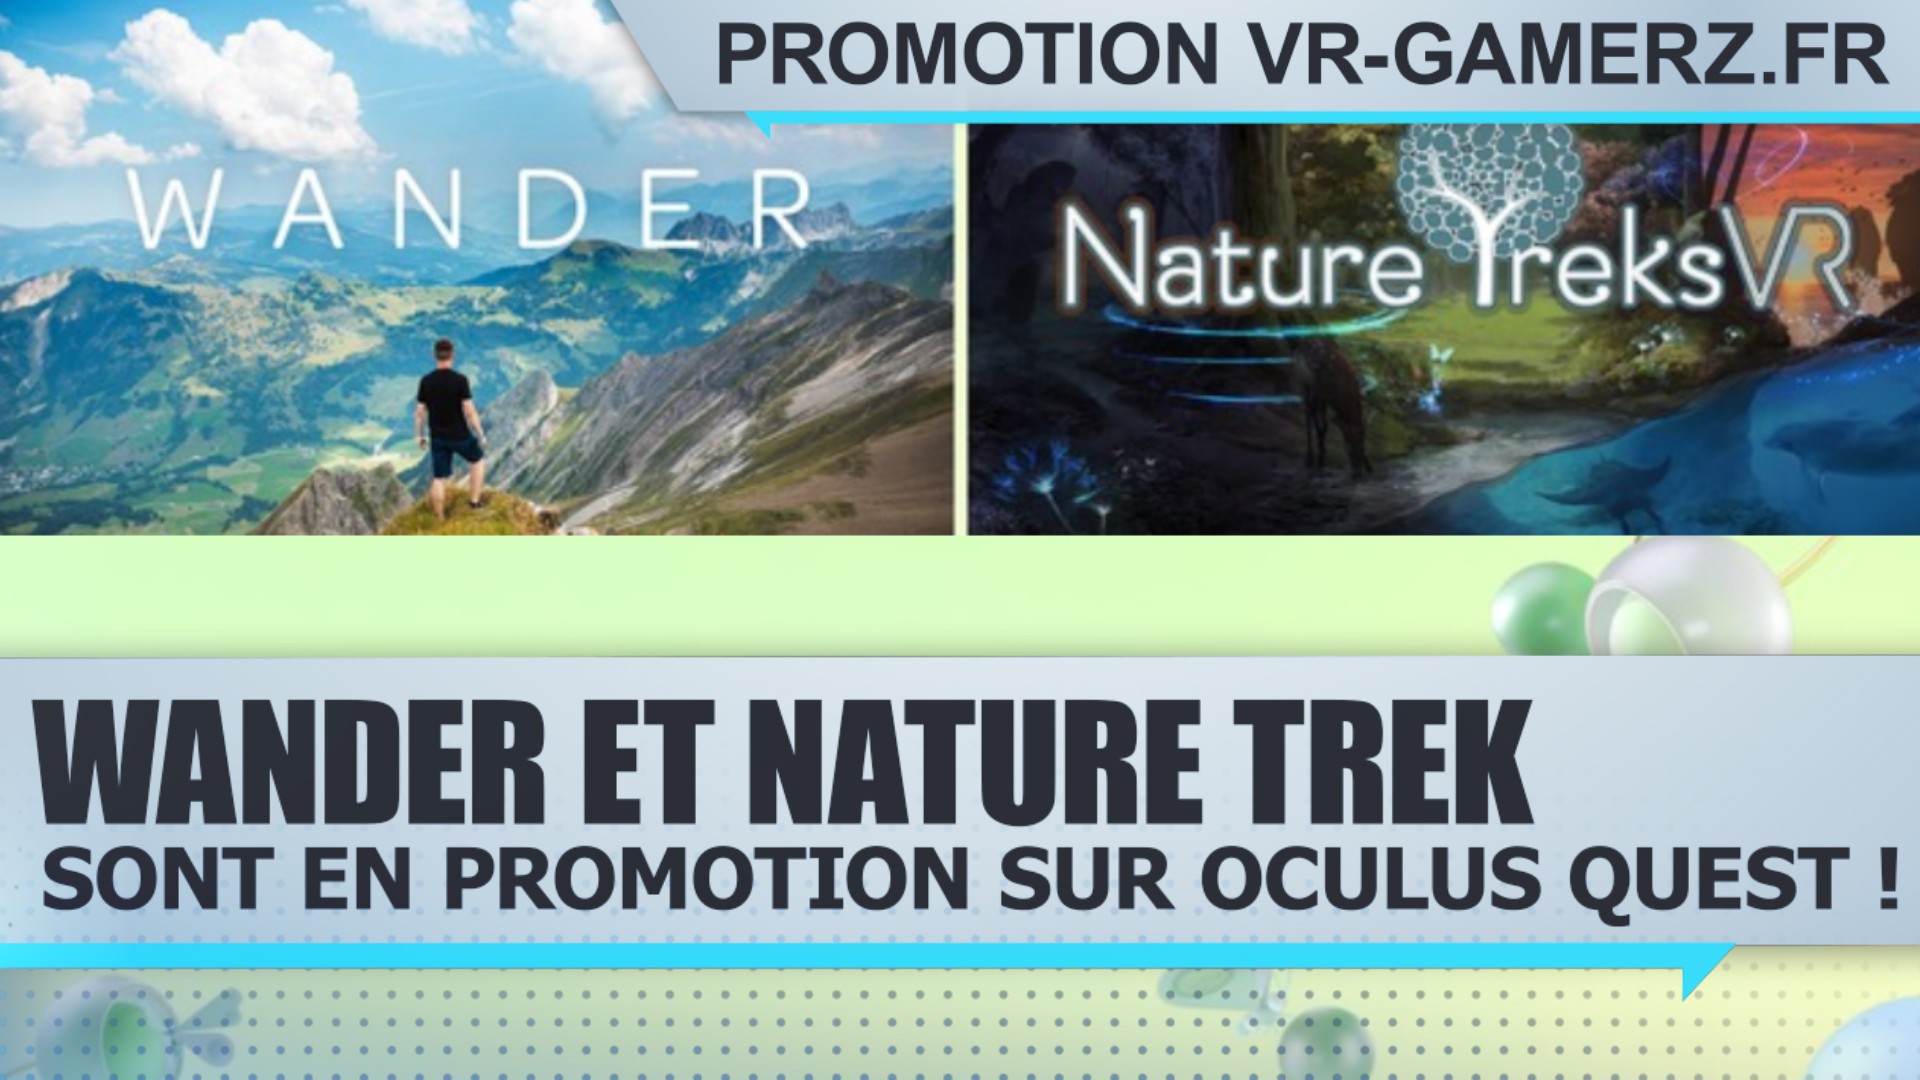 Wander et Nature Trek sont en promotion sur Oculus quest !